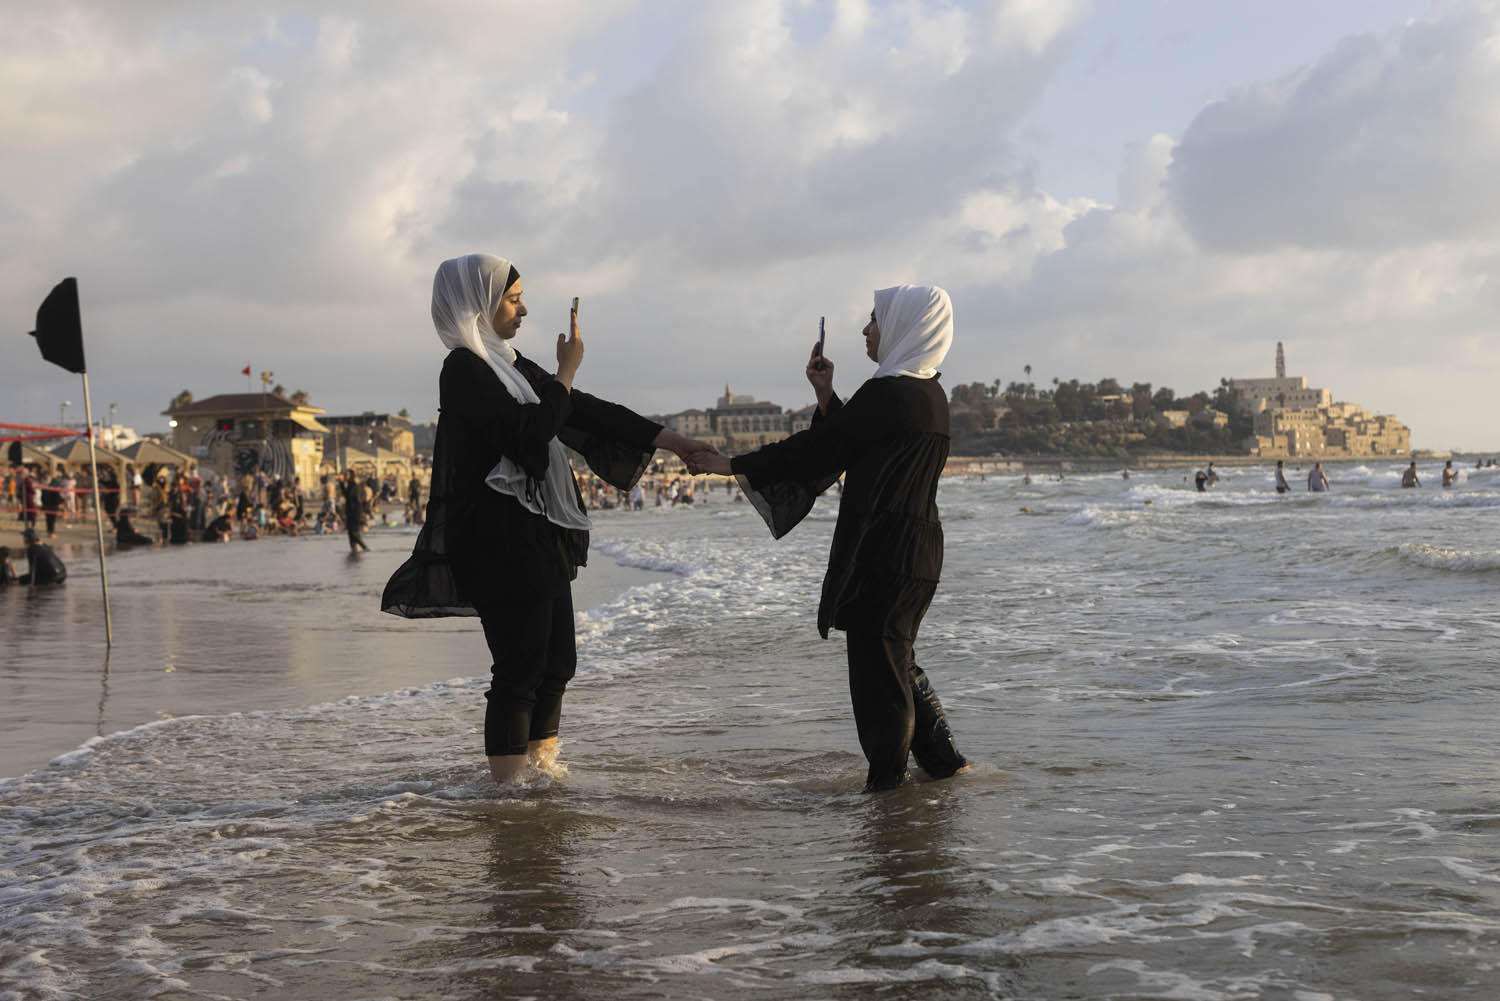 פלסטינים מבלים בחוף הים ביפו במהלך חג הקורבן, 10 ביולי 2022 (צילום: אורן זיו)